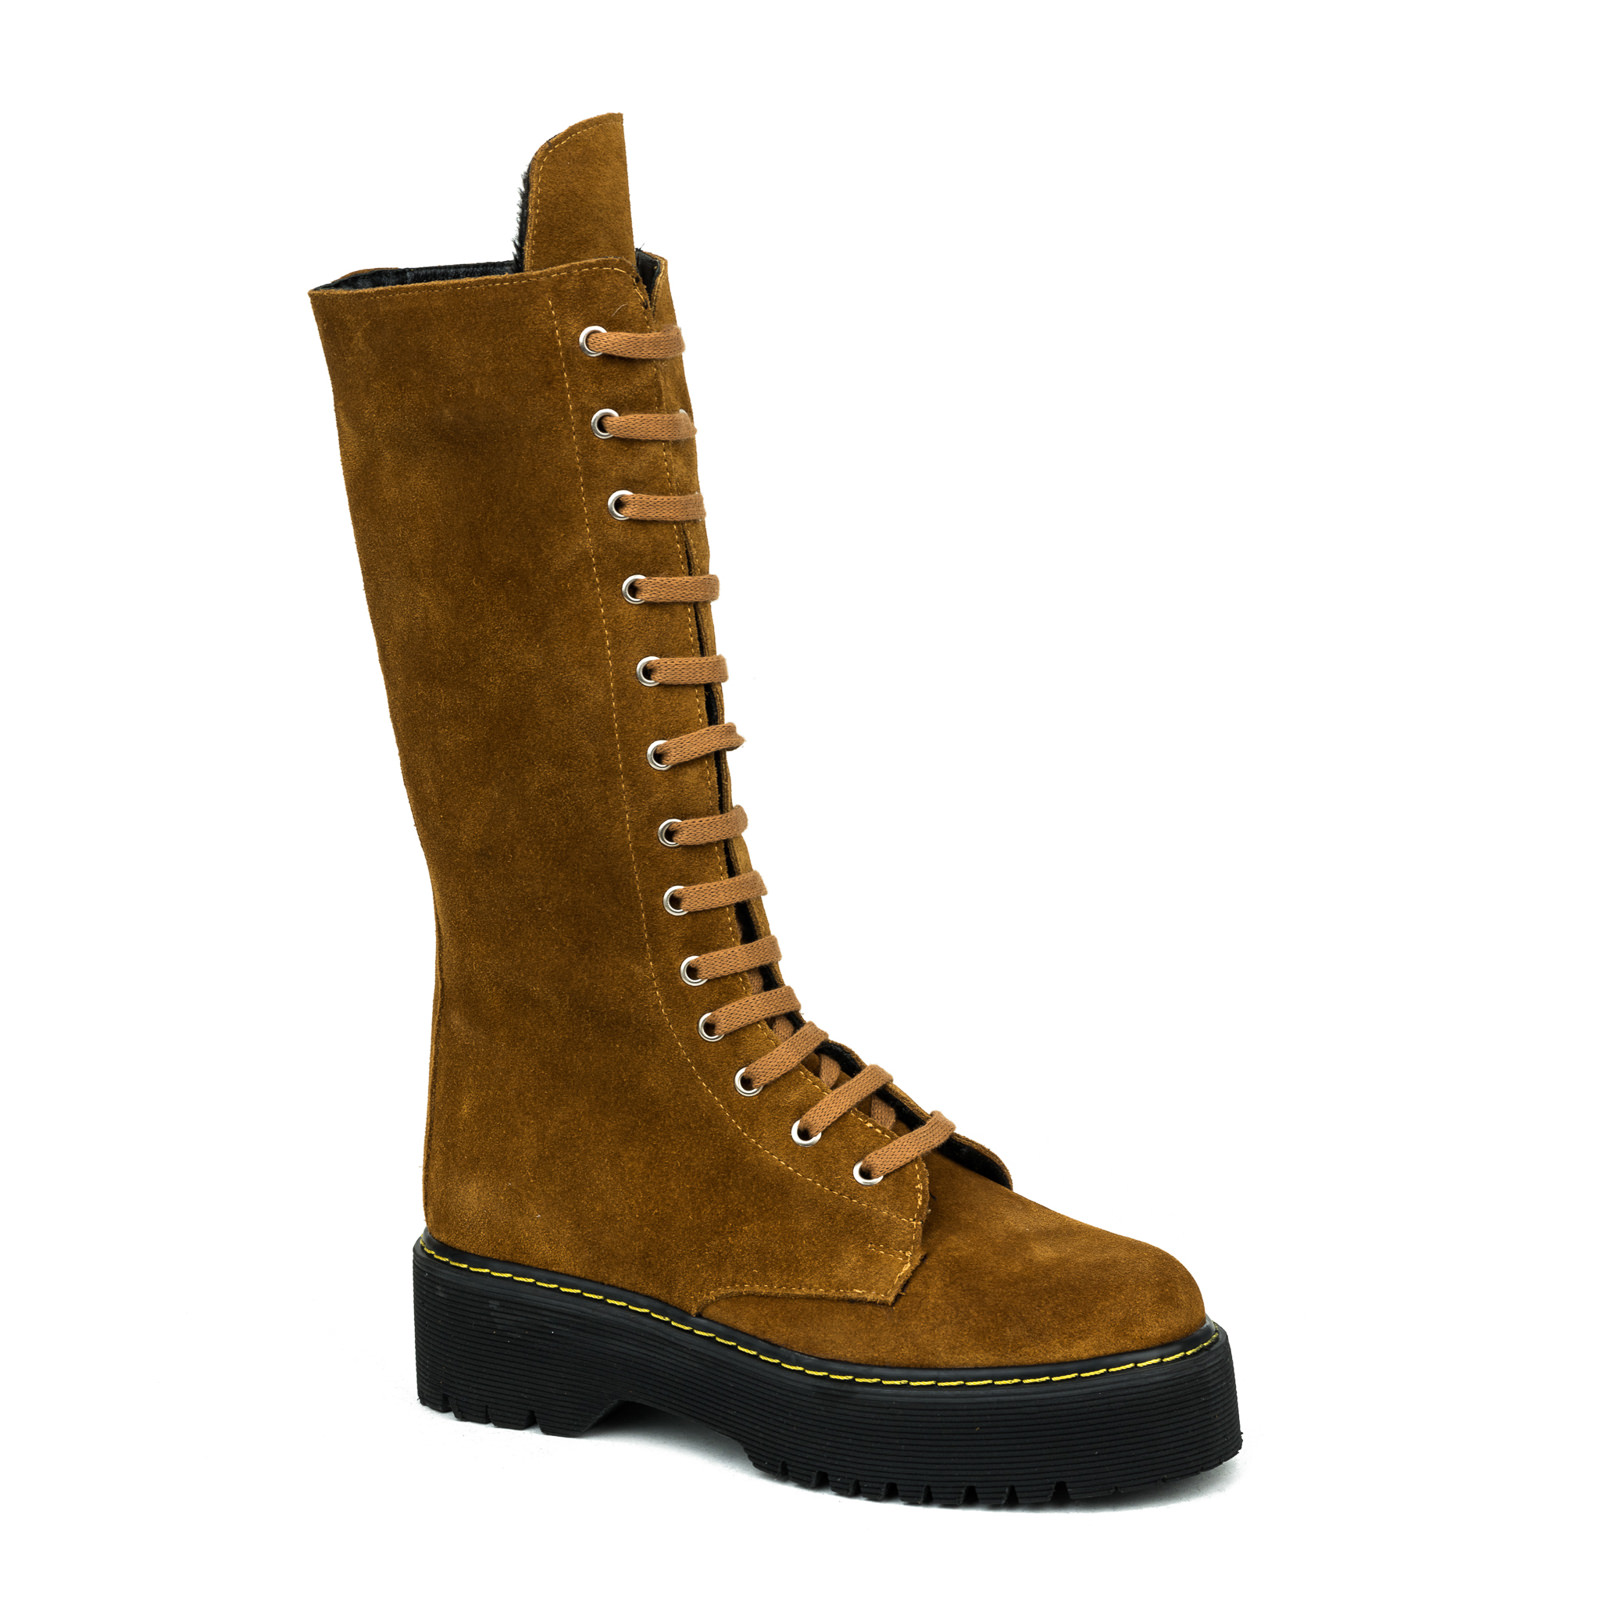 Leather WATERPROOF boots B204 - OCHRE